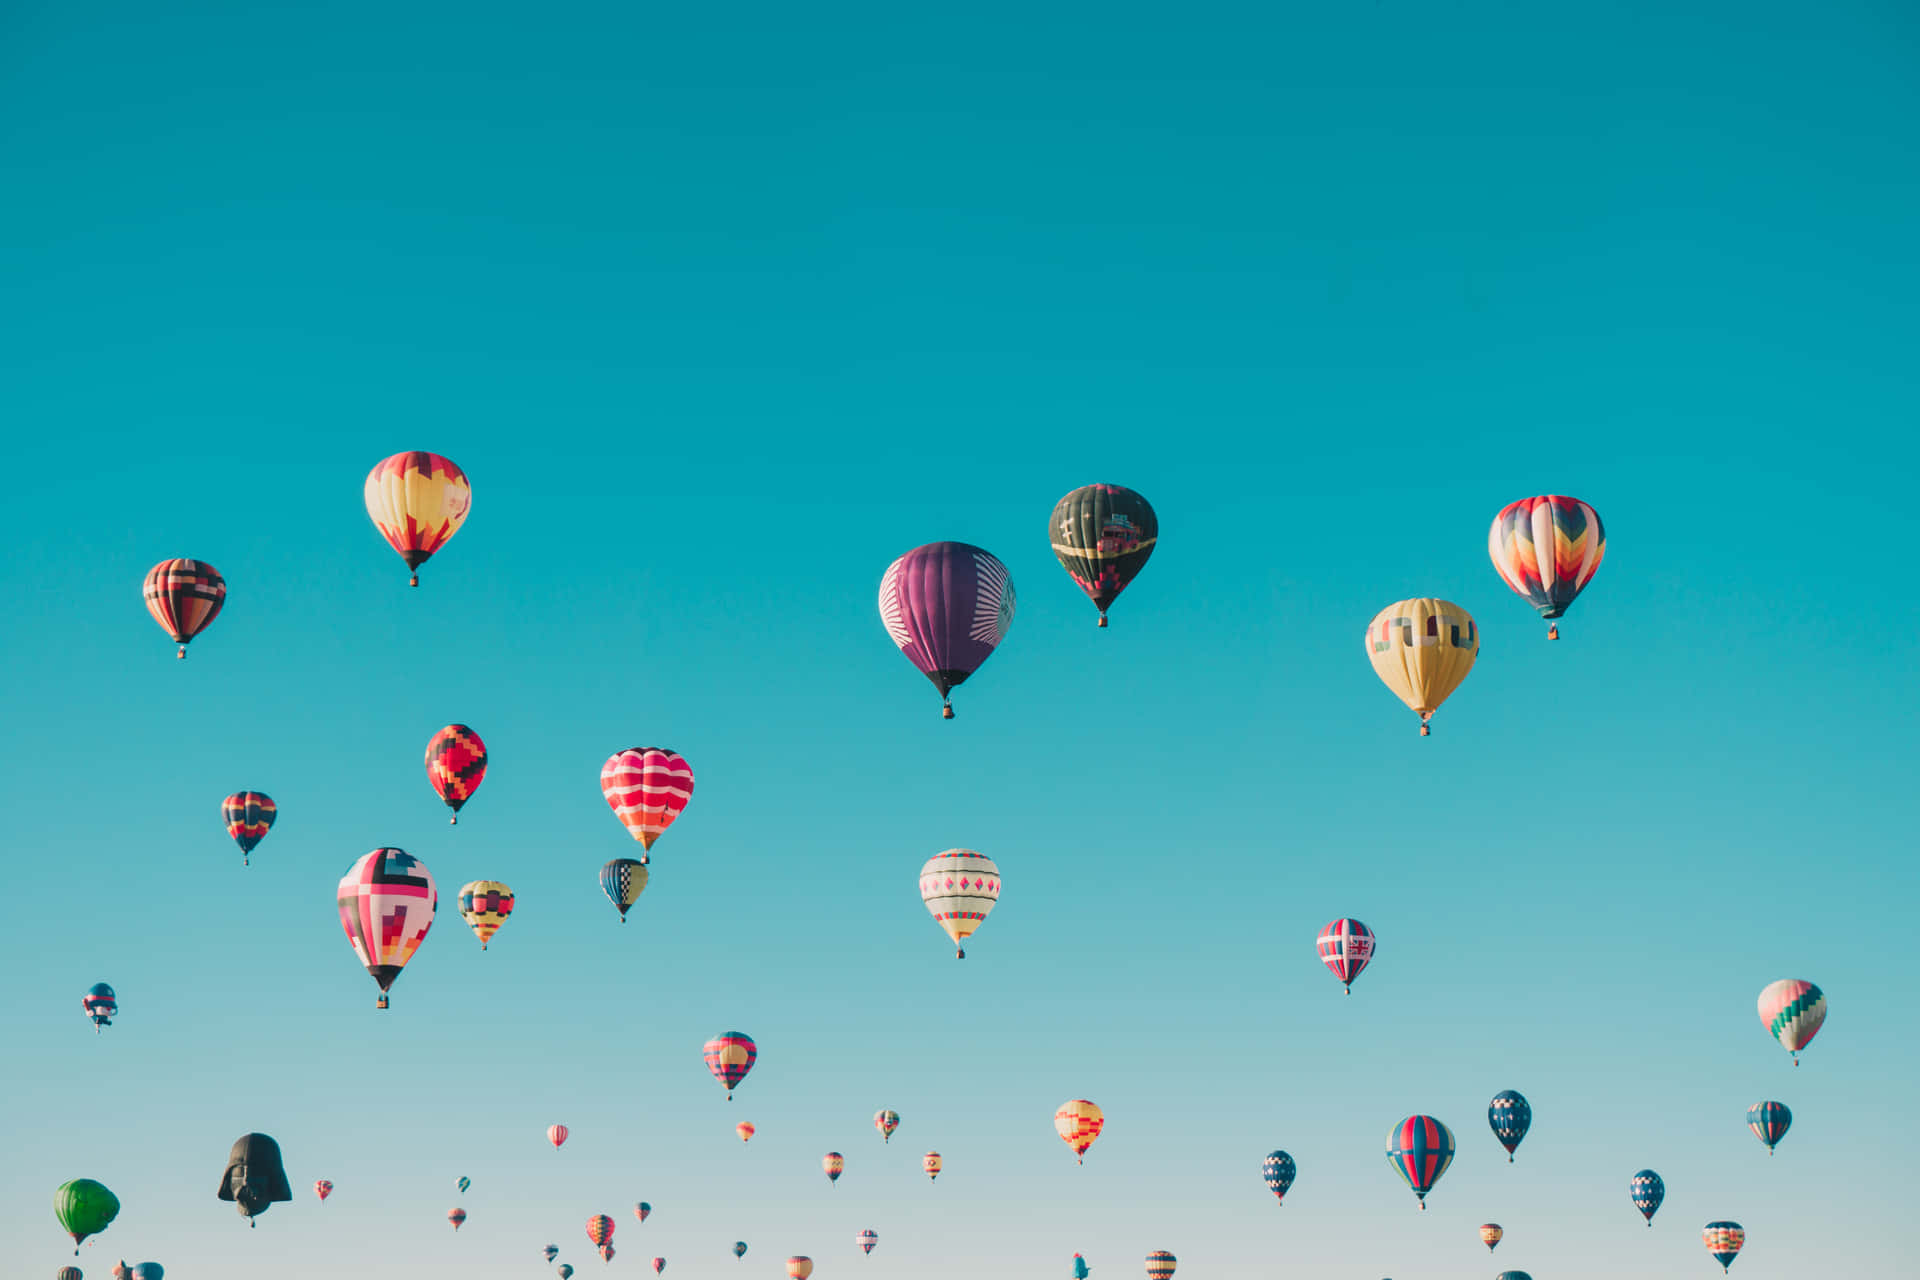 Umgrupo De Balões De Ar Quente Voando No Céu